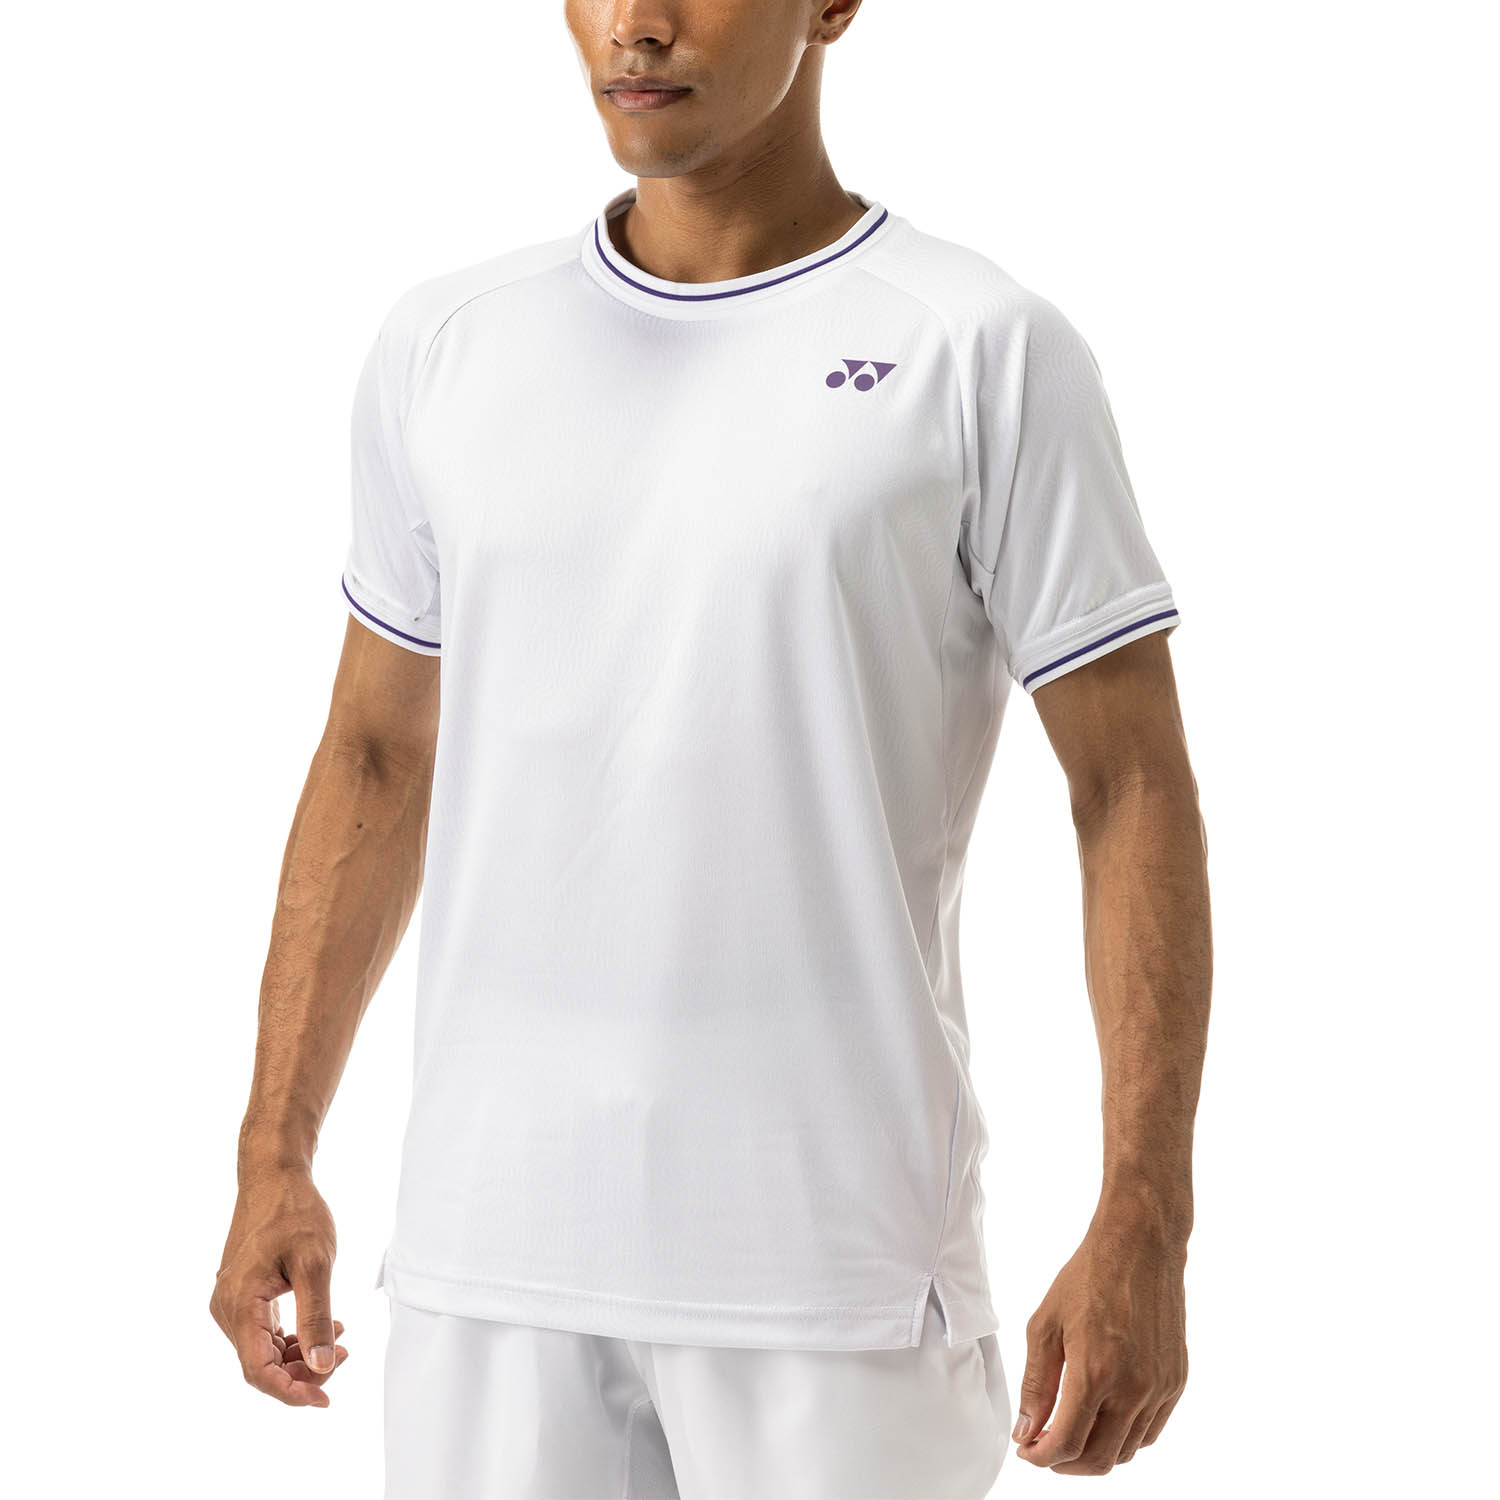 Yonex London Camiseta - White